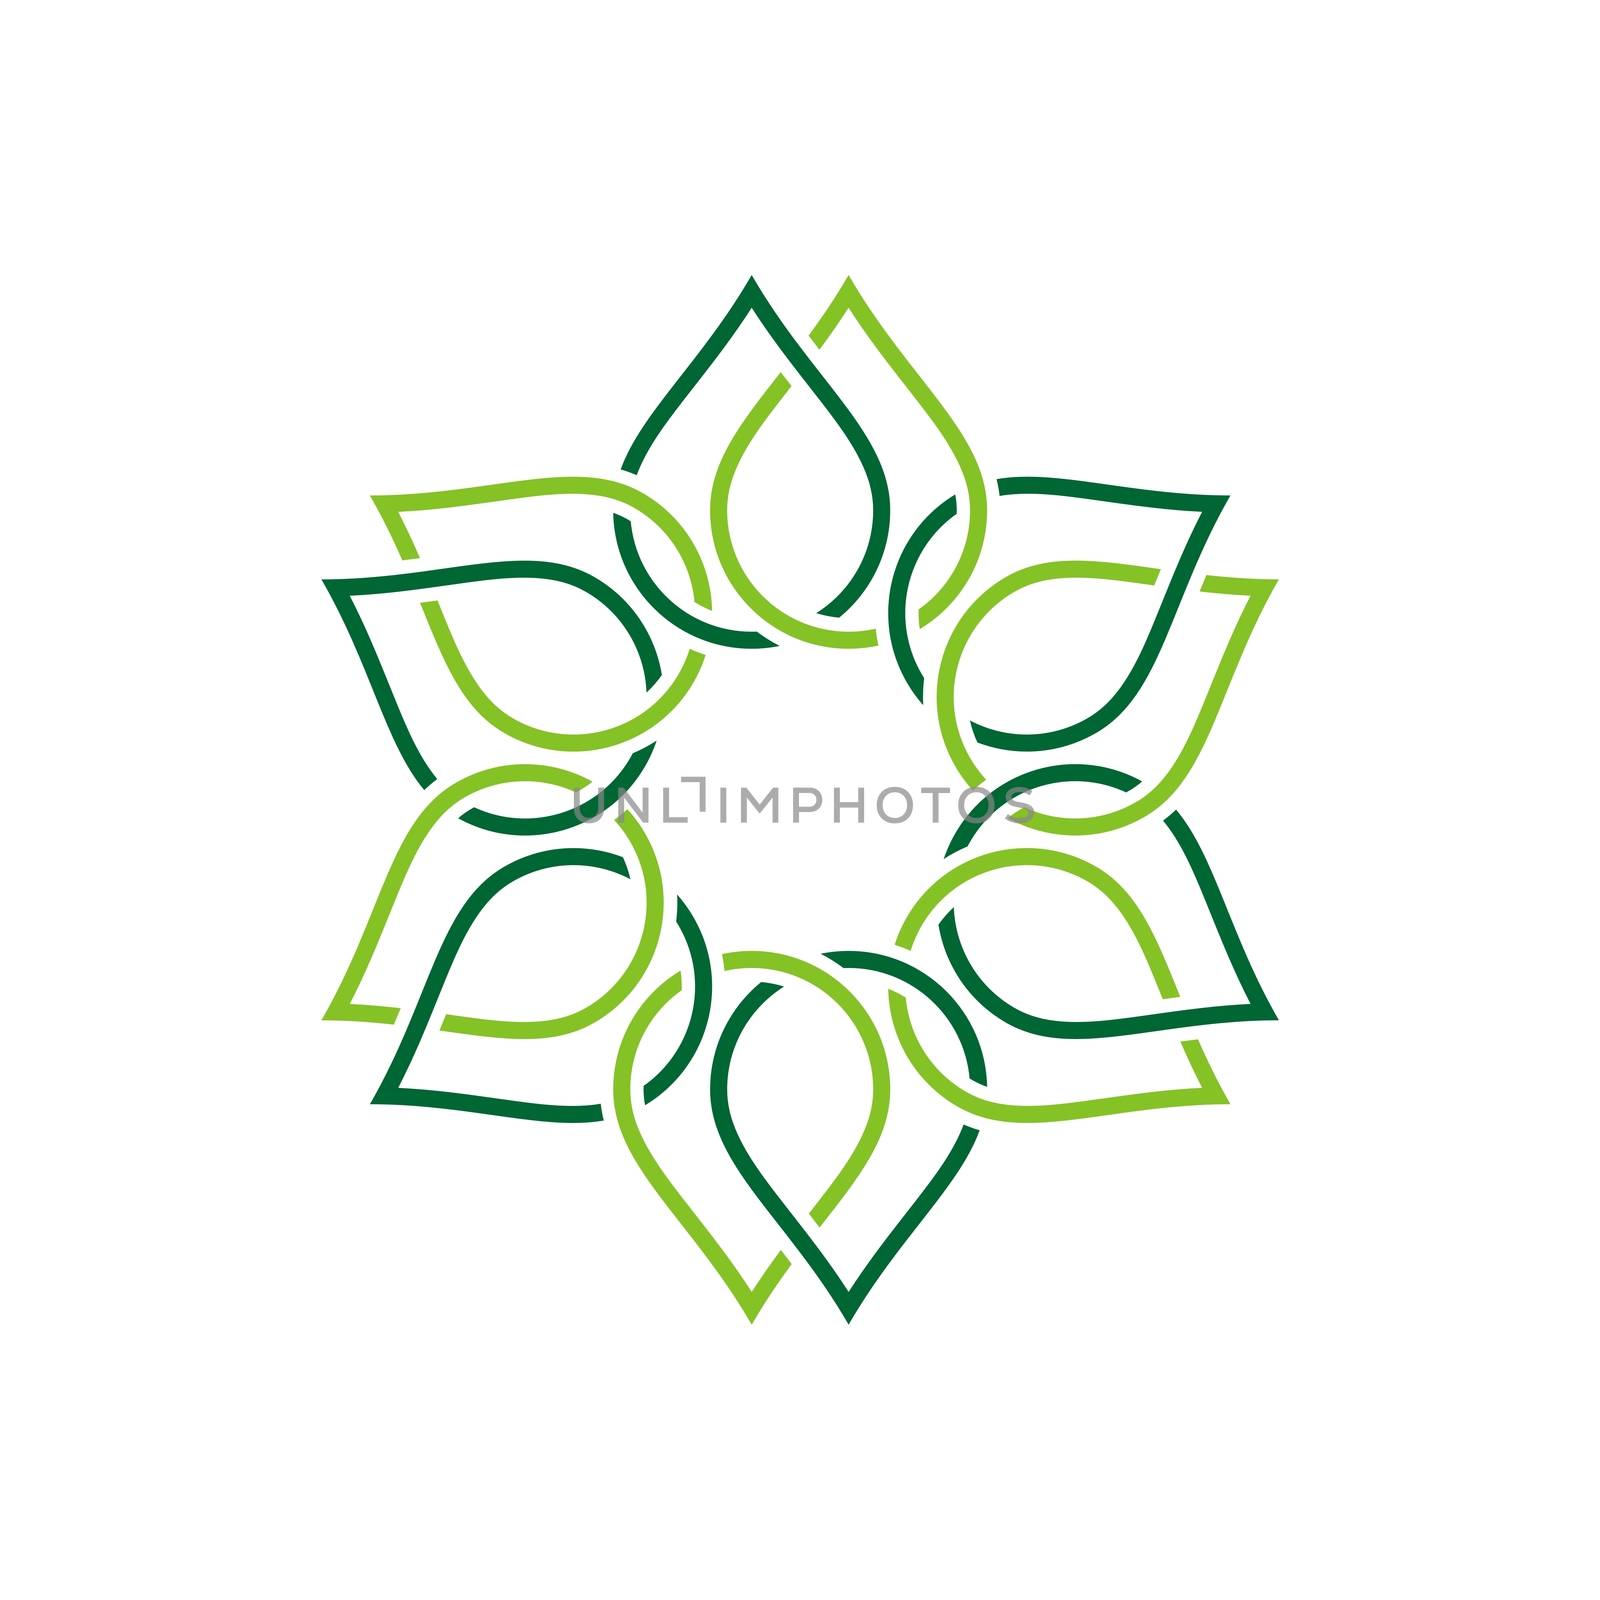 Green Line Ornamental Flower Logo Template Illustration Design. Vector EPS 10.